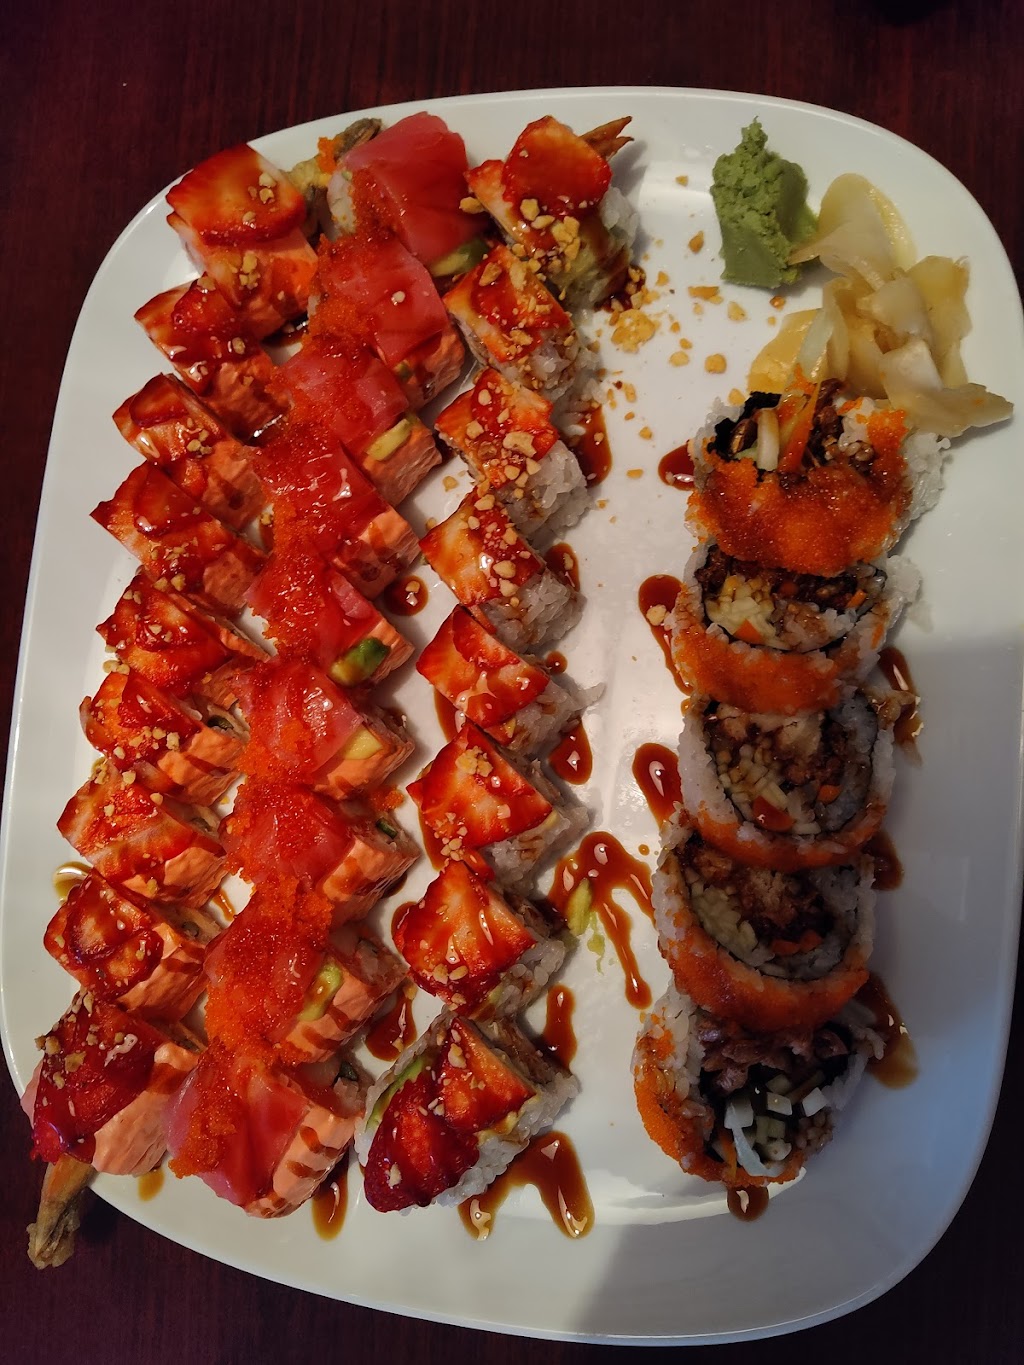 Fin Fusion Sushi Bar | 2862 S Church St, Murfreesboro, TN 37127 | Phone: (615) 494-3442